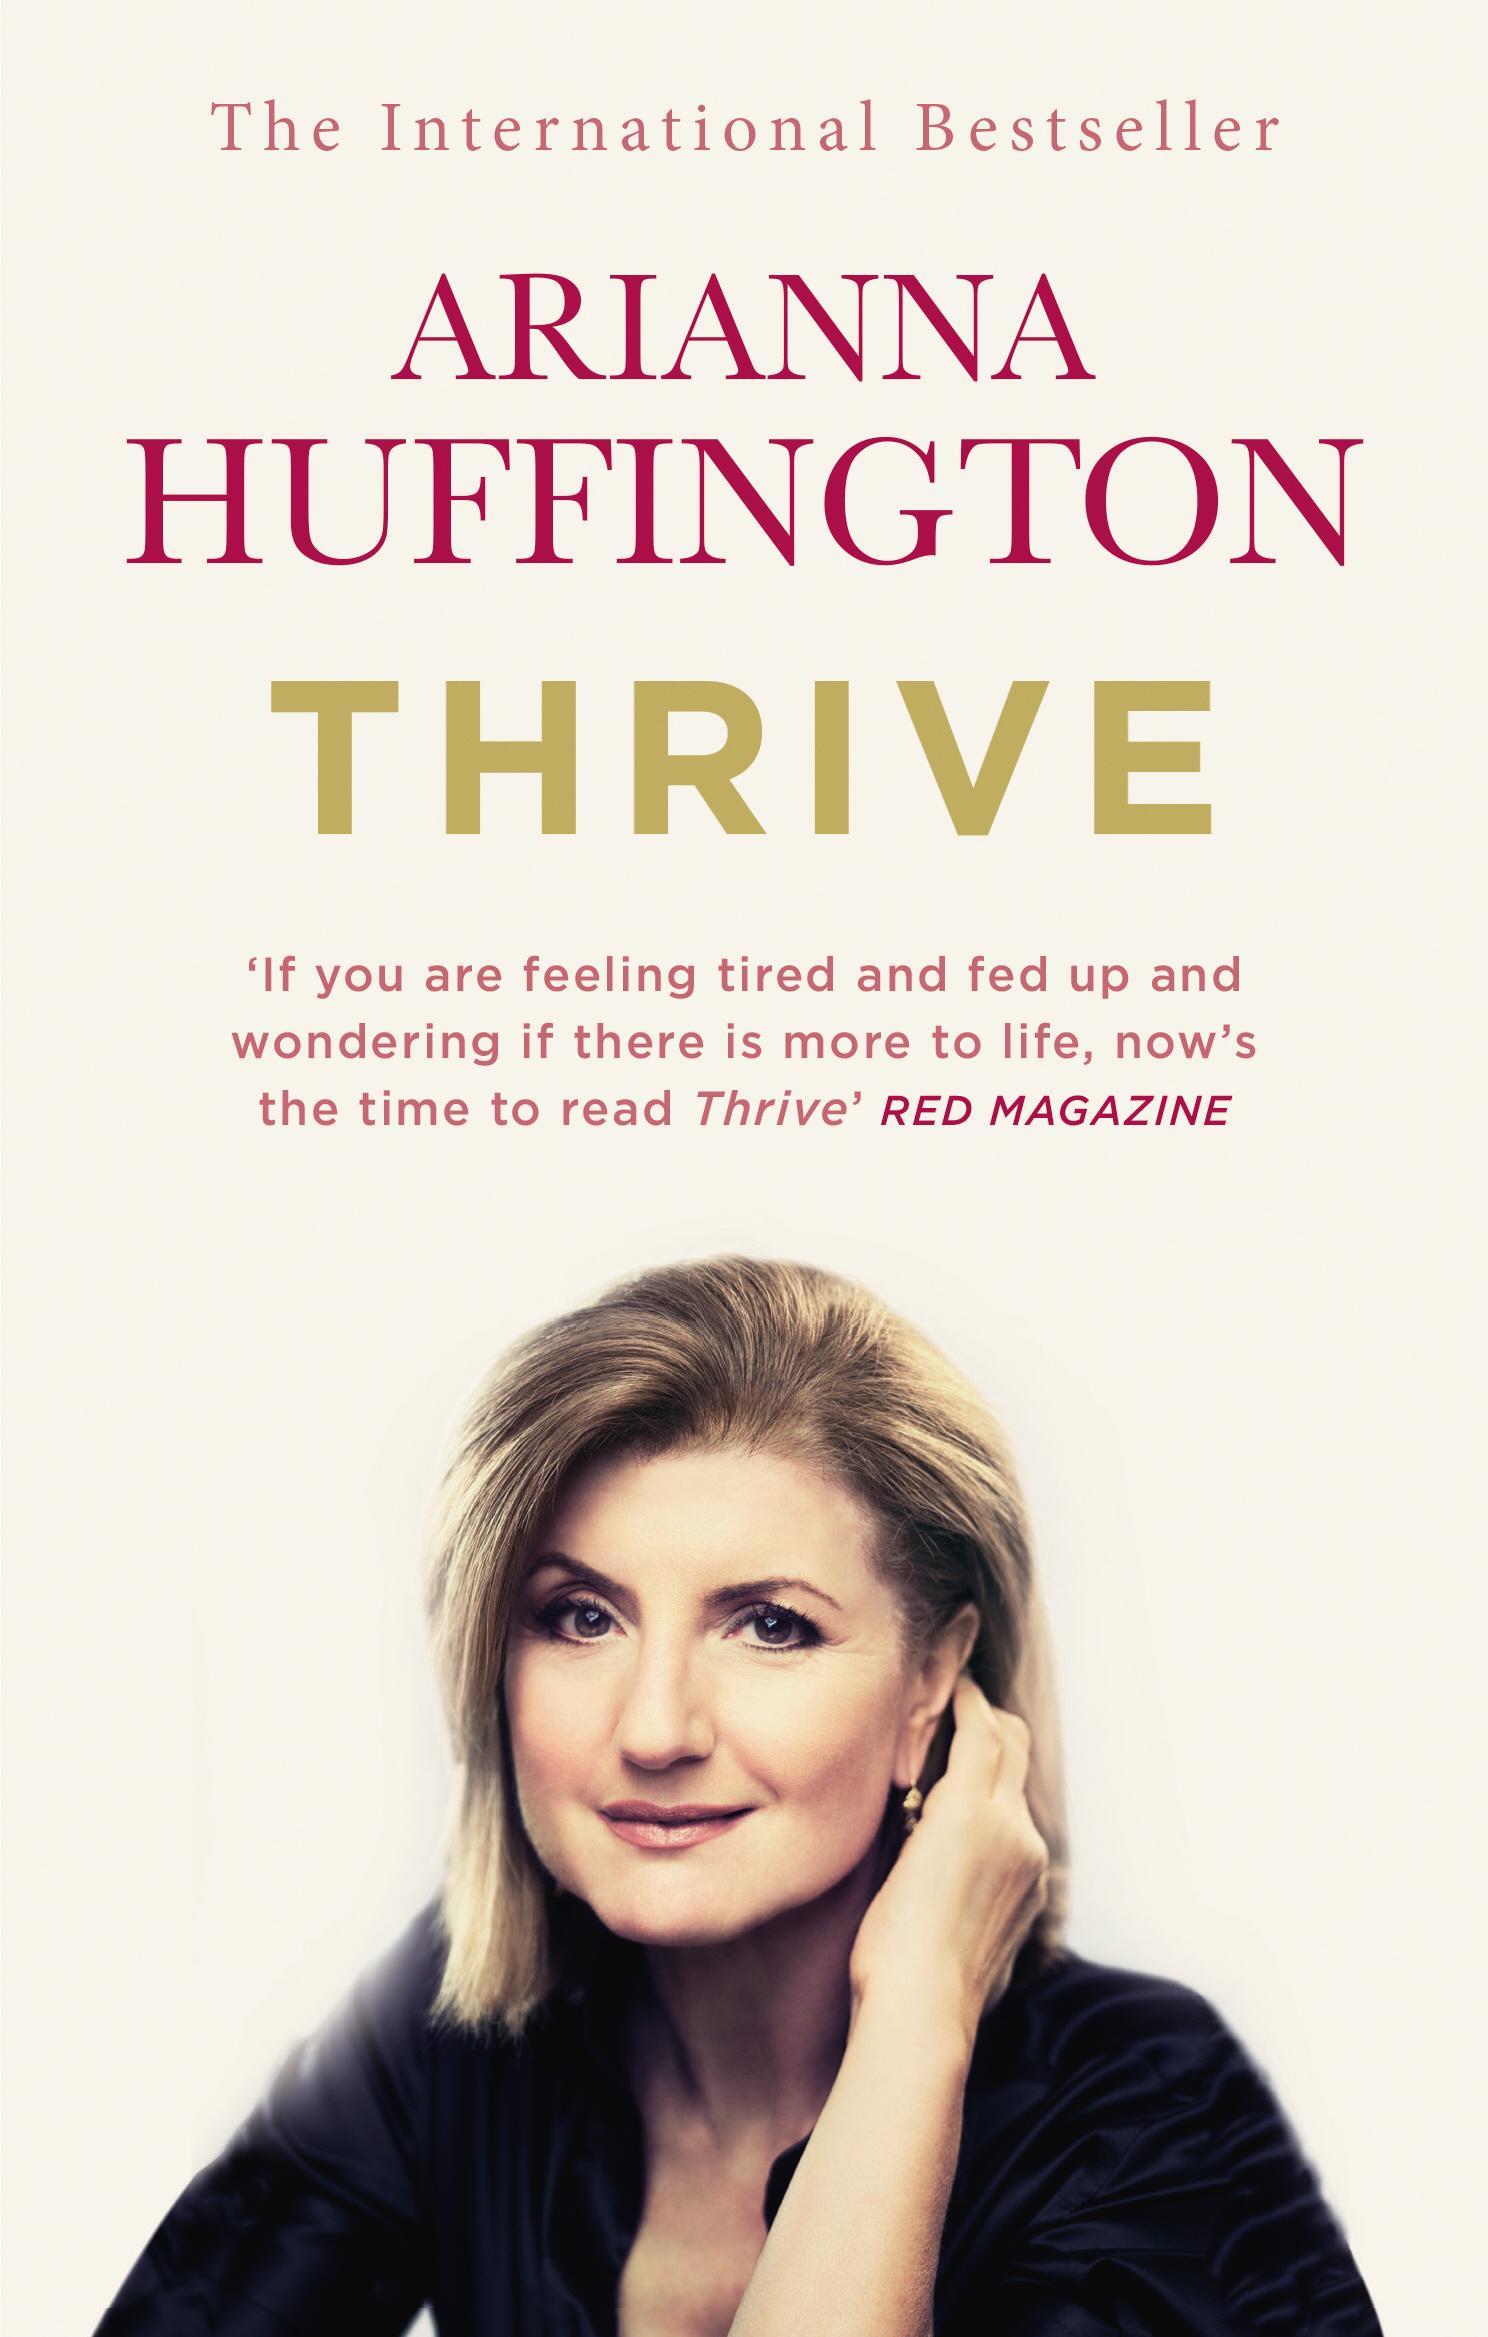 Thrive - Arianna Huffington